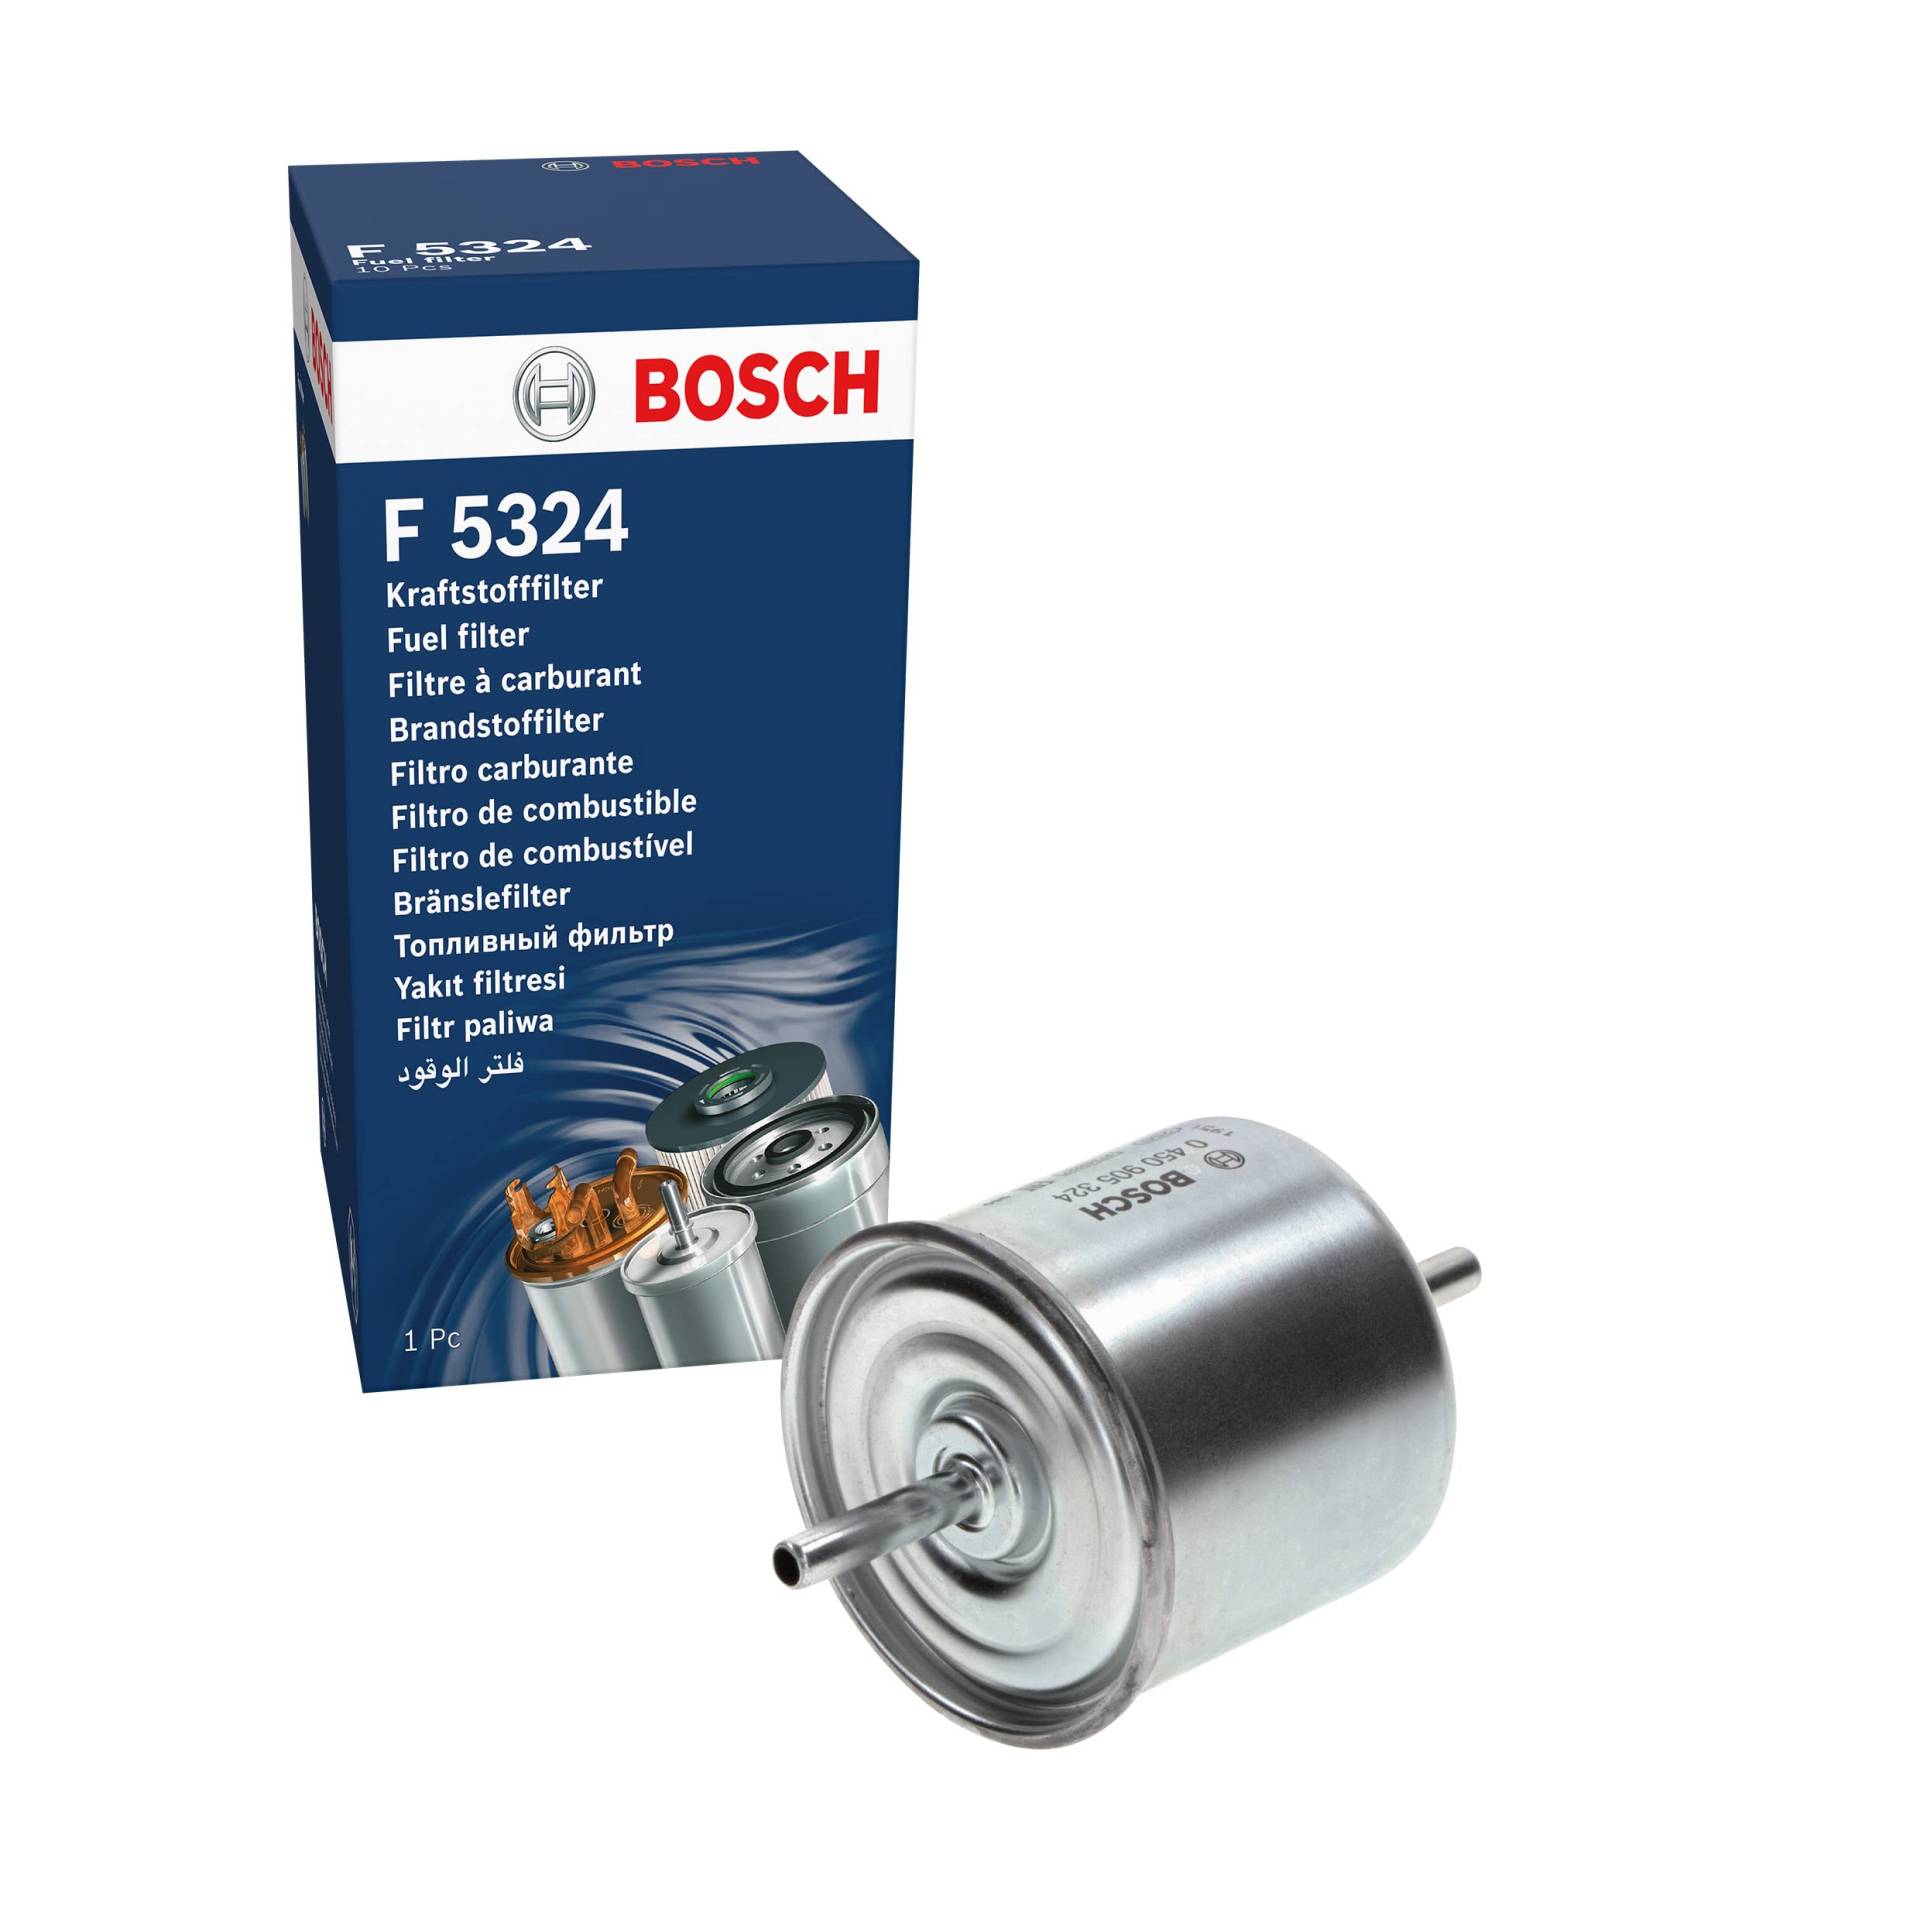 Bosch F5324 - Benzinfilter Auto von Bosch Automotive